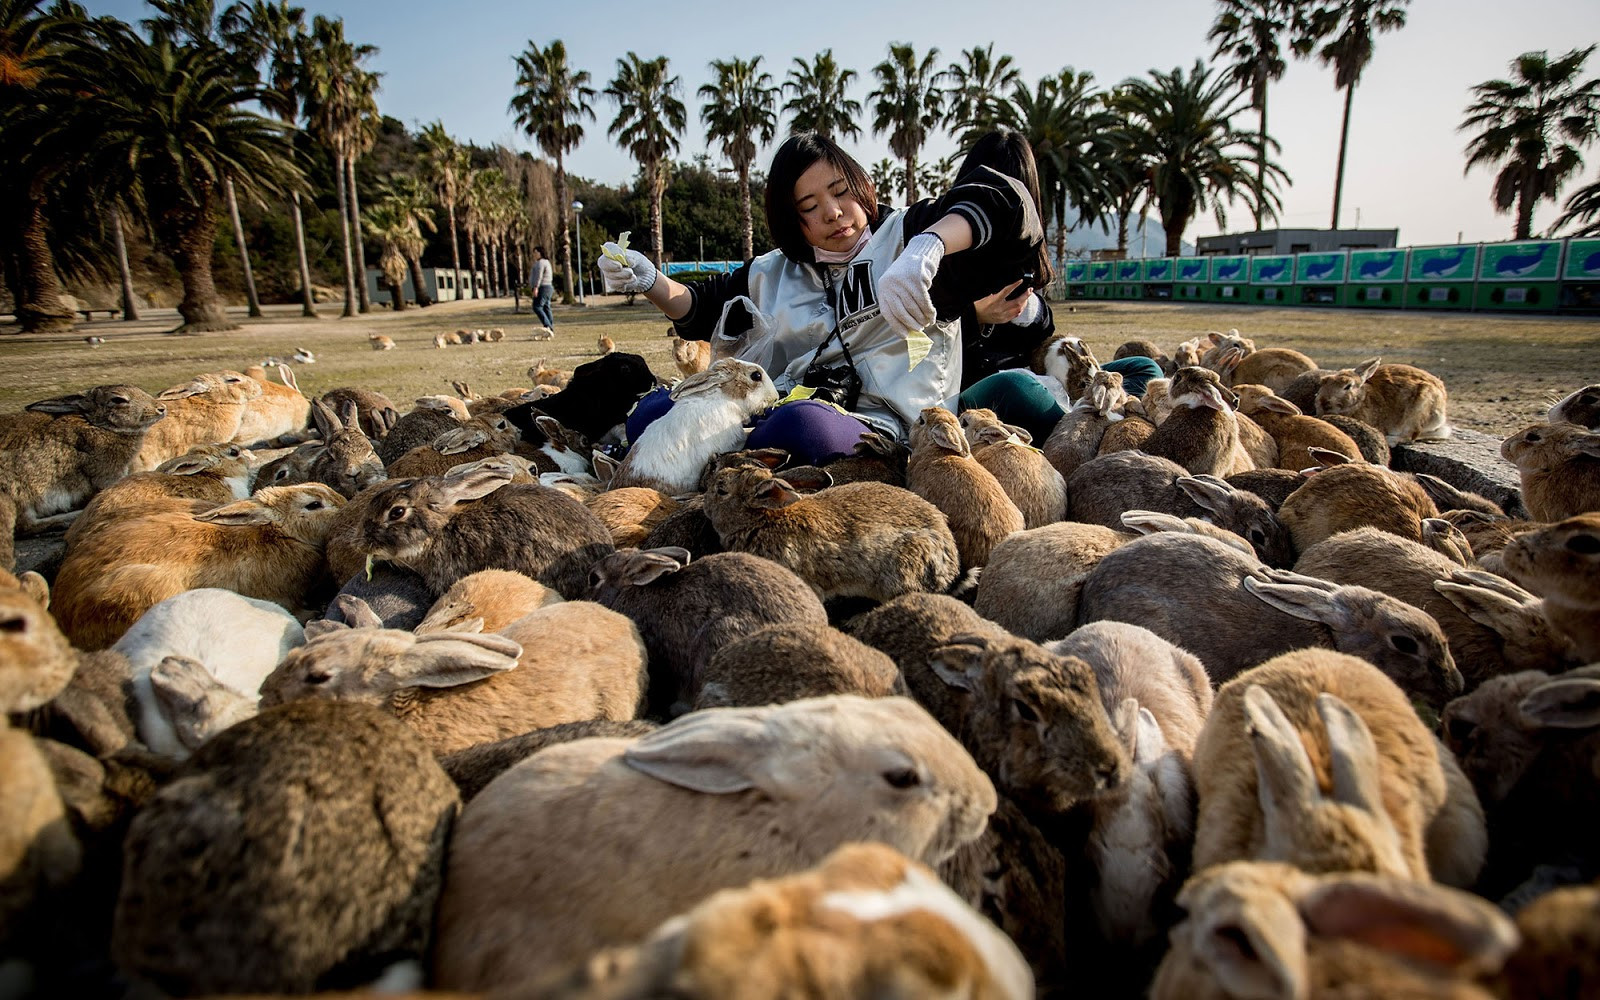 Dễ thương chịu không nổi với đảo thỏ ở Nhật Bản - 1